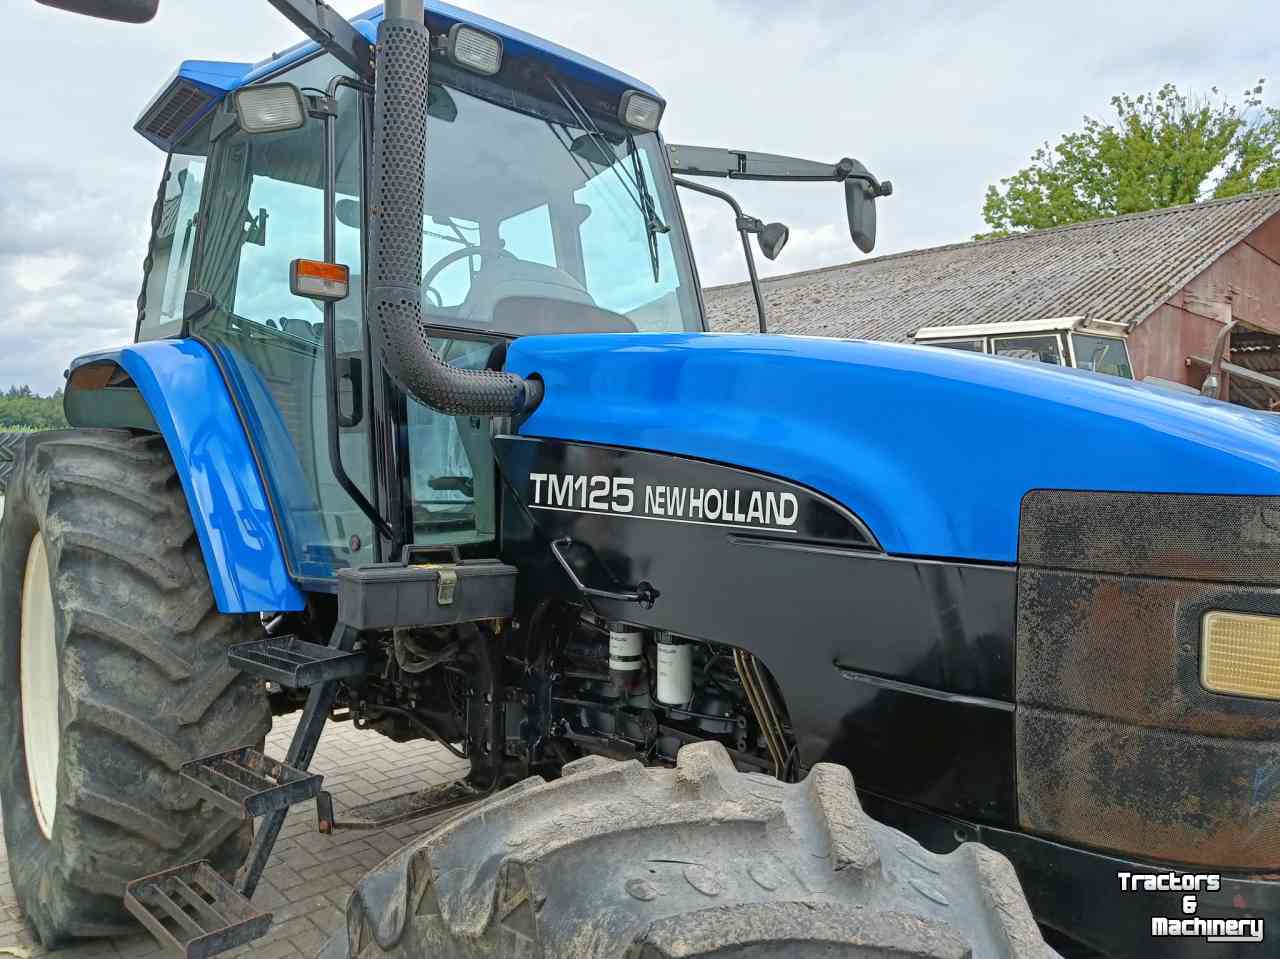 Tractors New Holland TM125 Supersteer Range Command